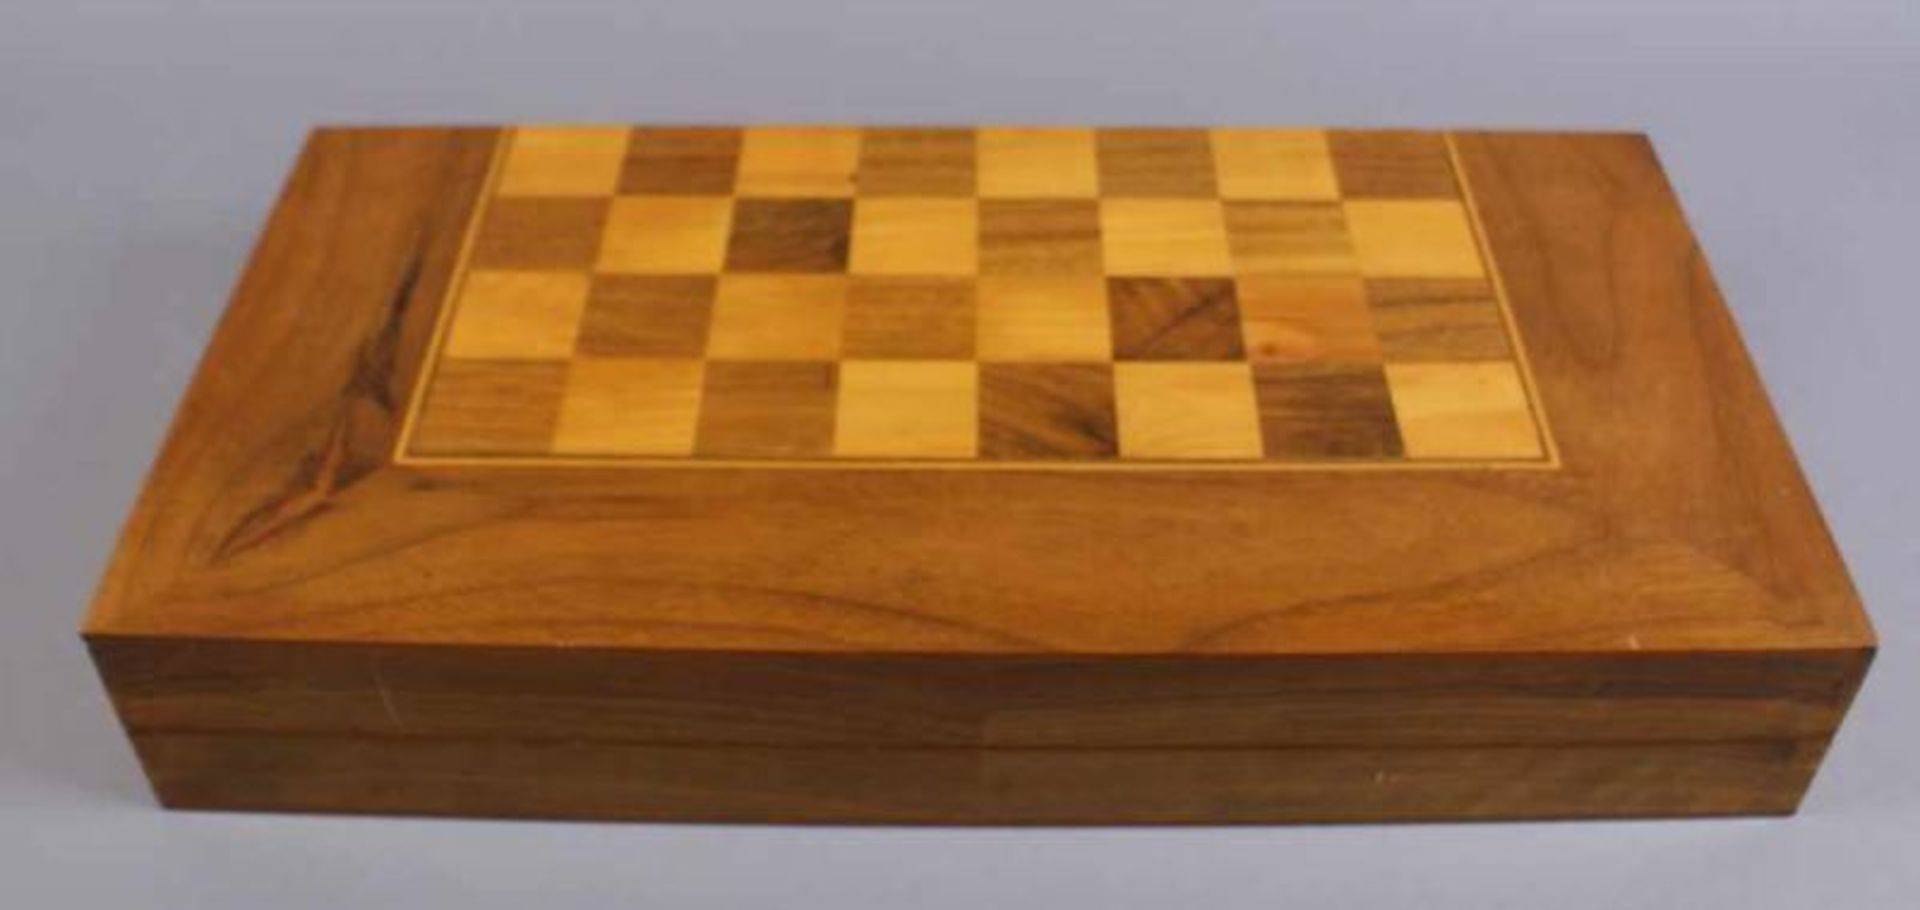 Schach / Backgammon, verschiedene Edelhölzer, 49x49 cm 20.17 % buyer's premium on the hammer price